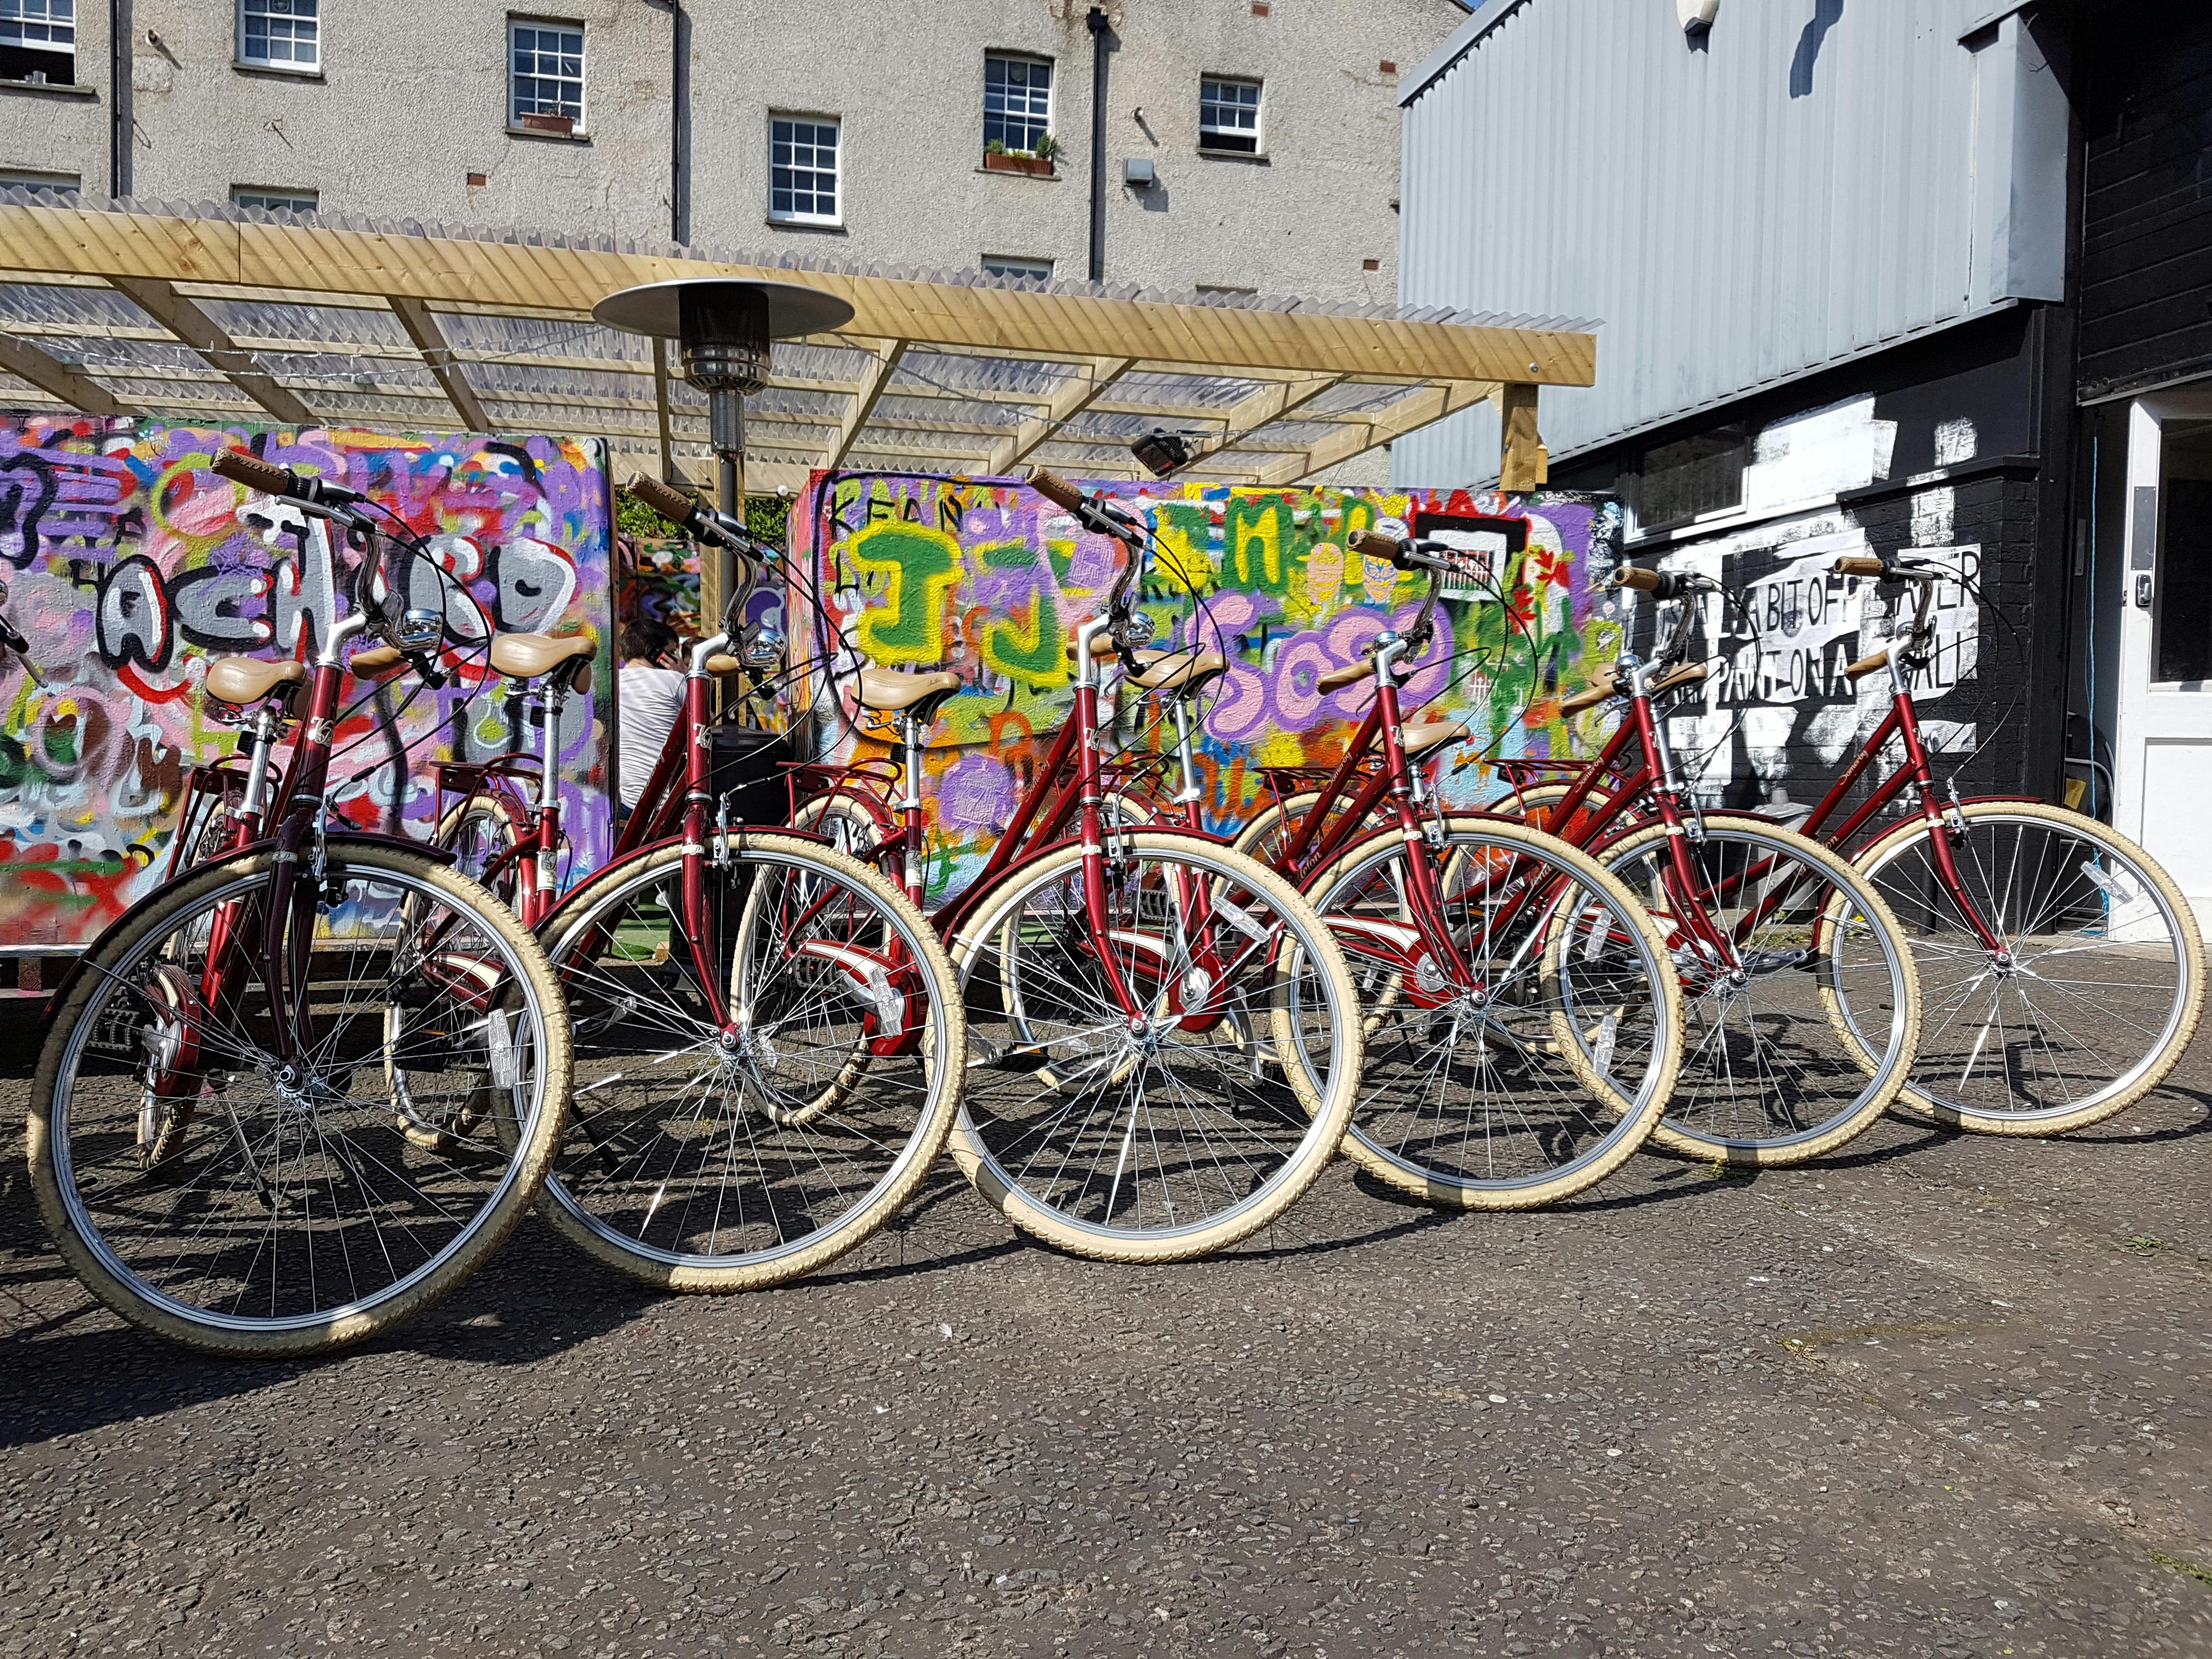 London Street Art tour by bike